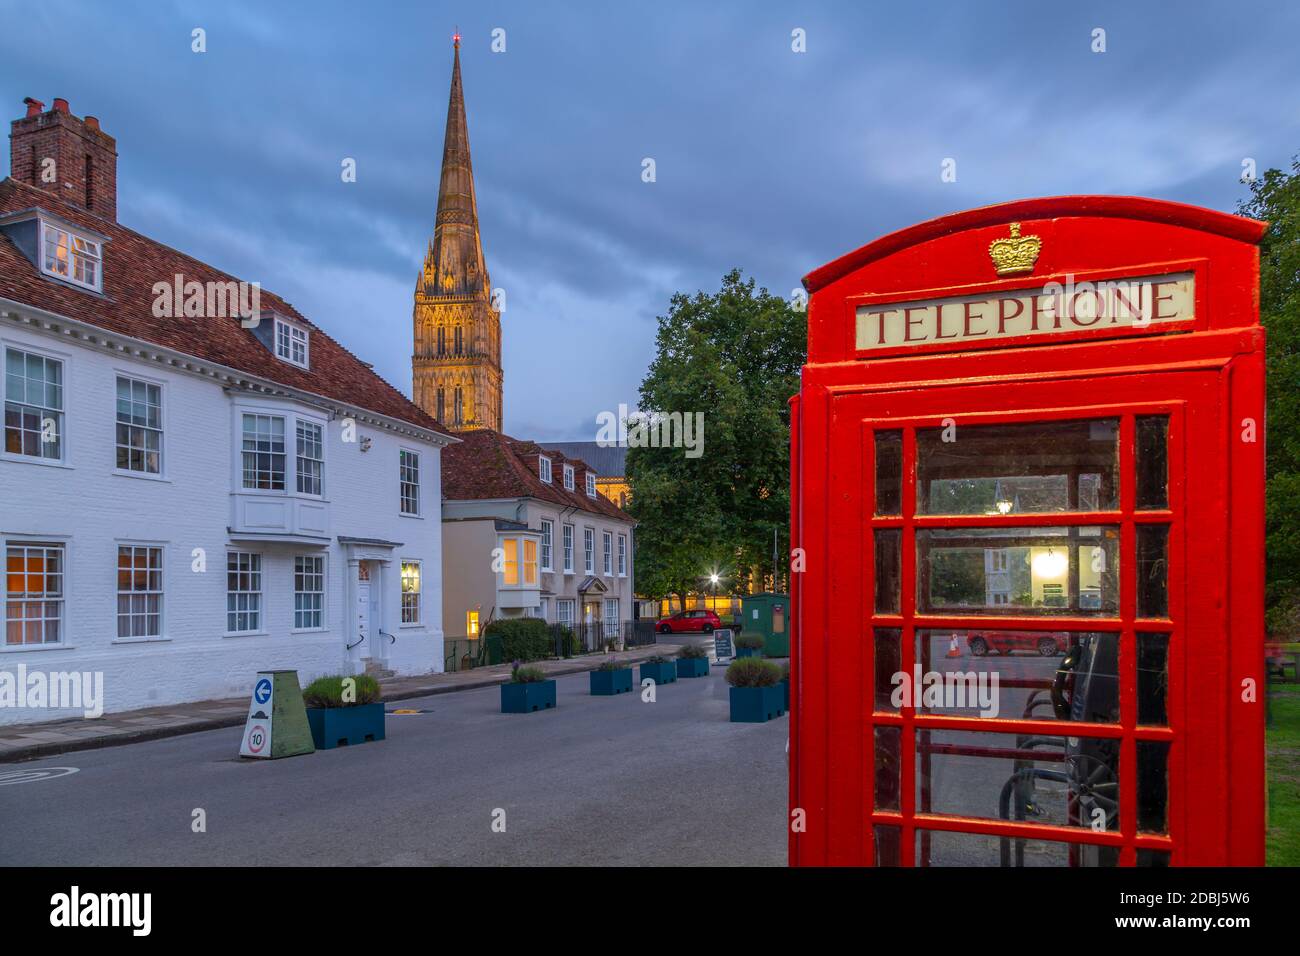 Vue sur la cathédrale de Salisbury et la boîte téléphonique rouge au crépuscule, Salisbury, Wiltshire, Angleterre, Royaume-Uni, Europe Banque D'Images